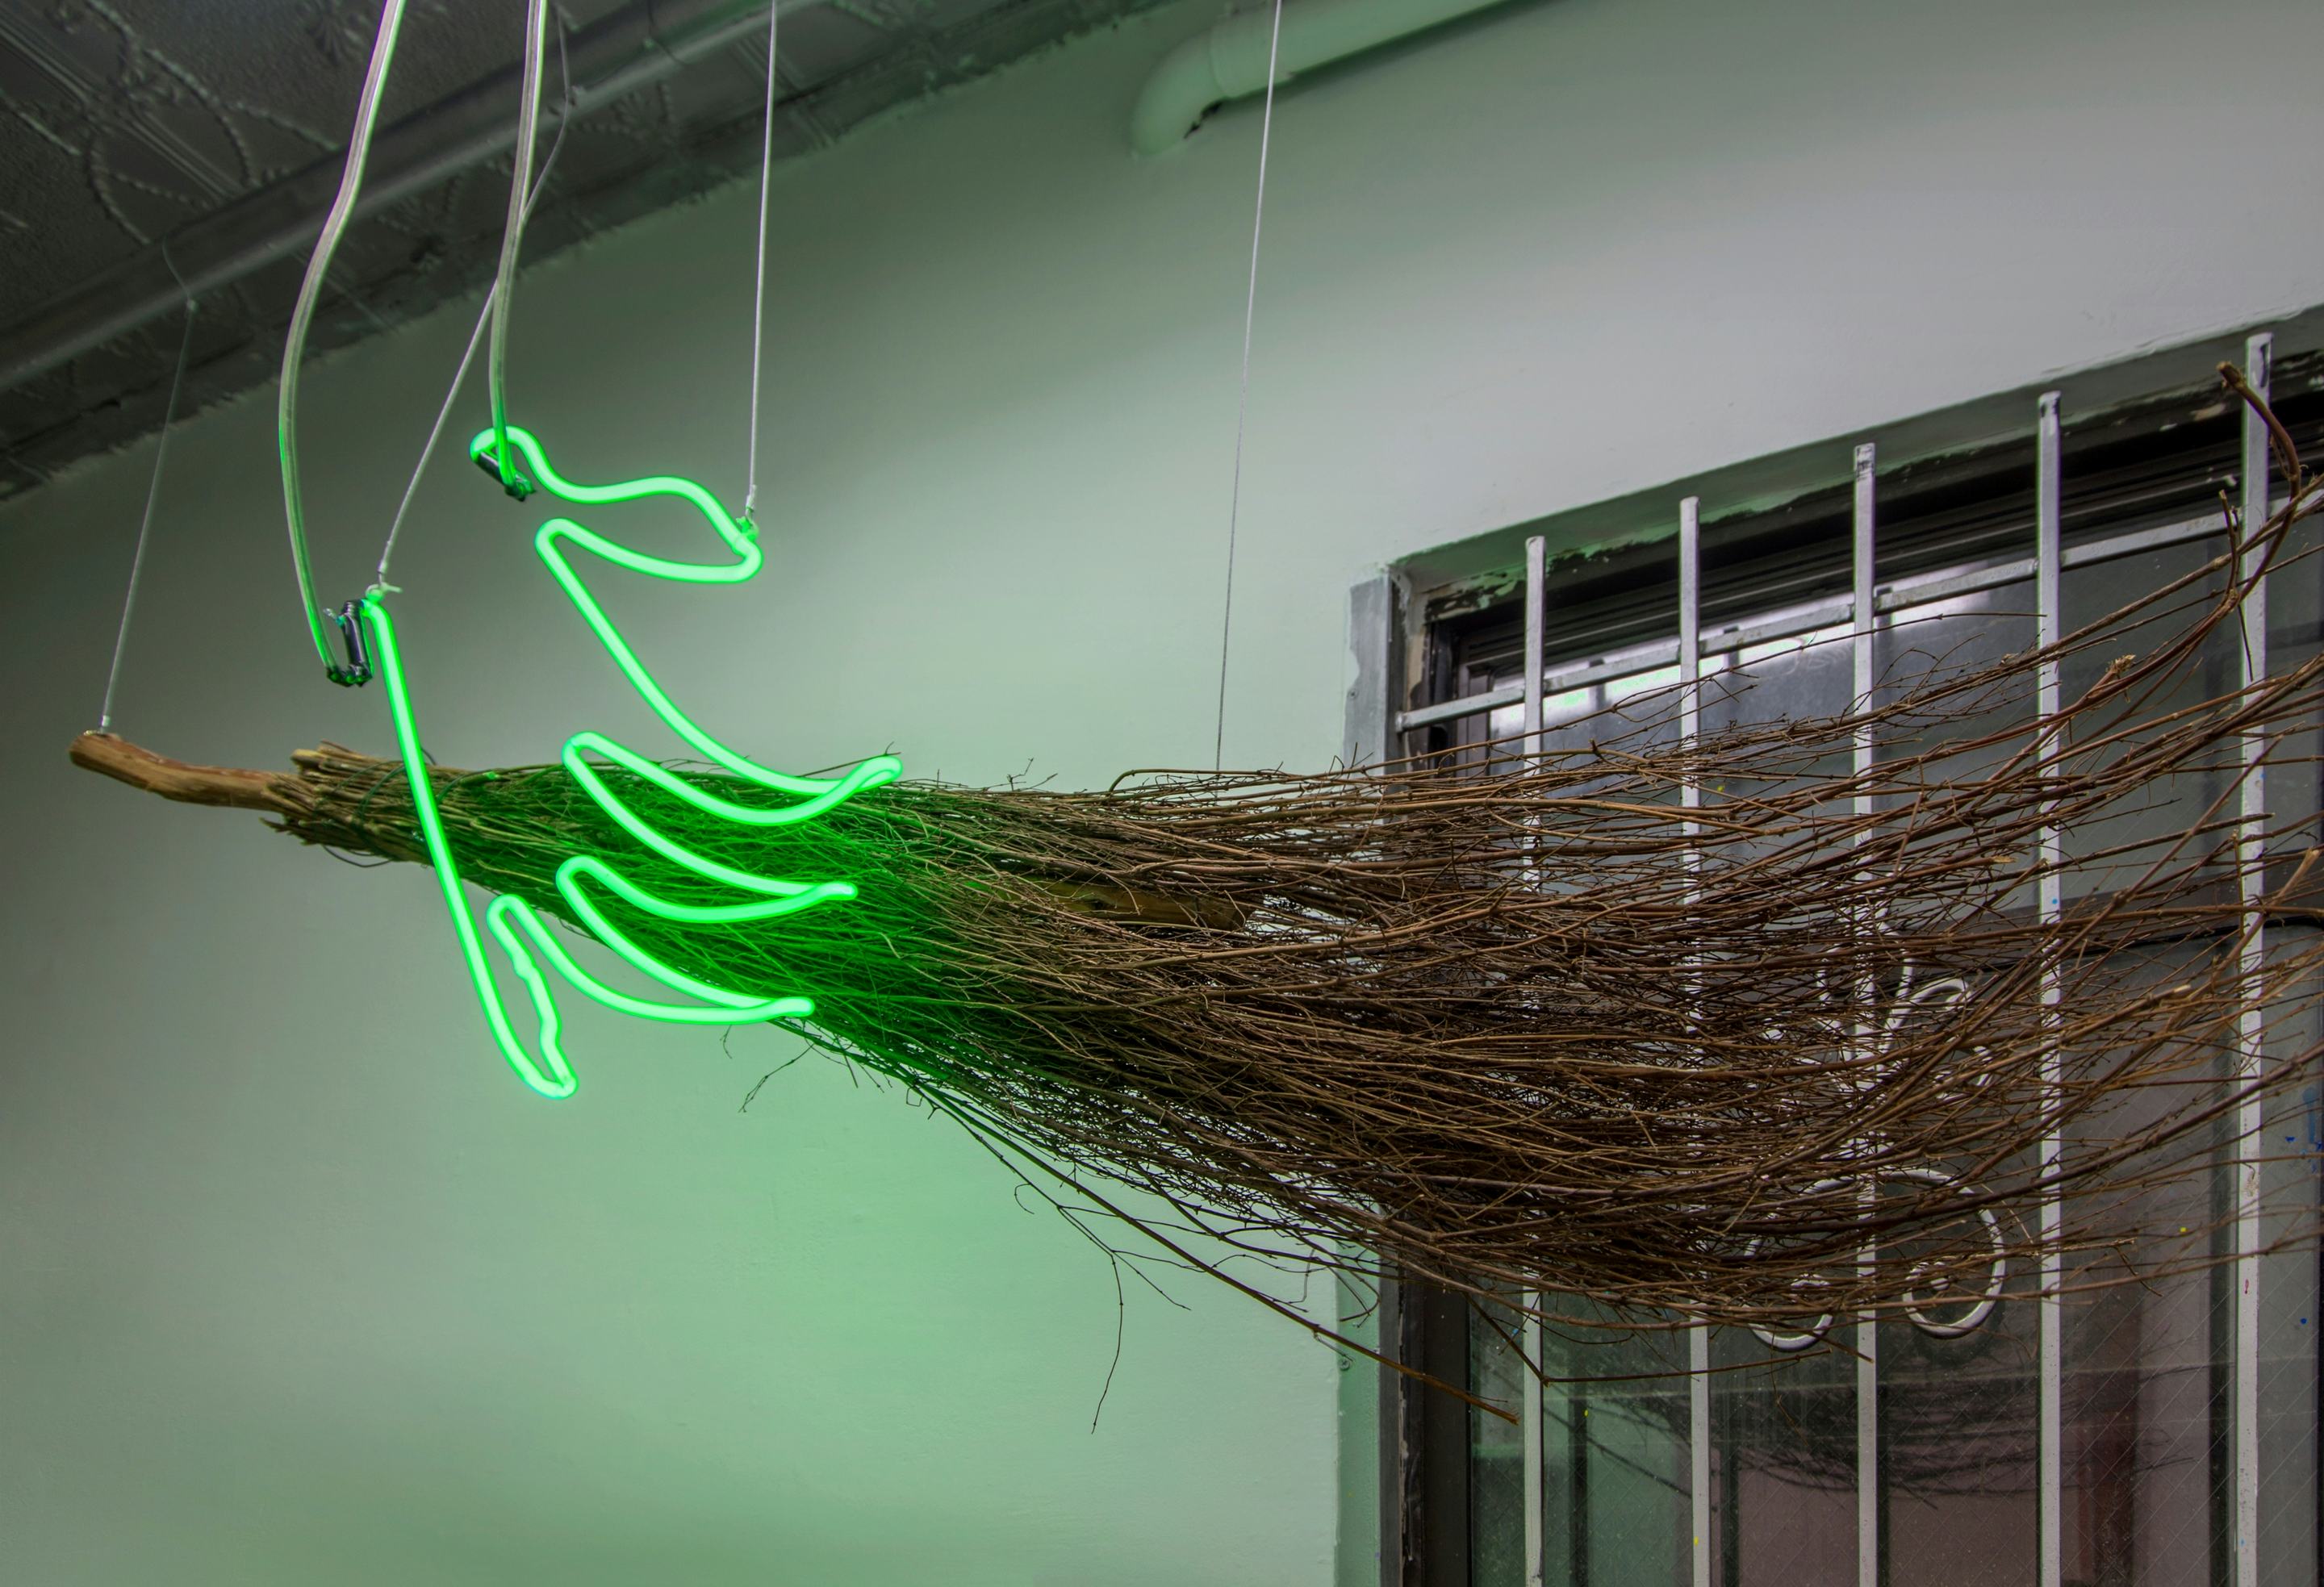 Tru Bruja (2018)
Broom, neon
24h × 72w inches (60.96h × 182.88w cm)